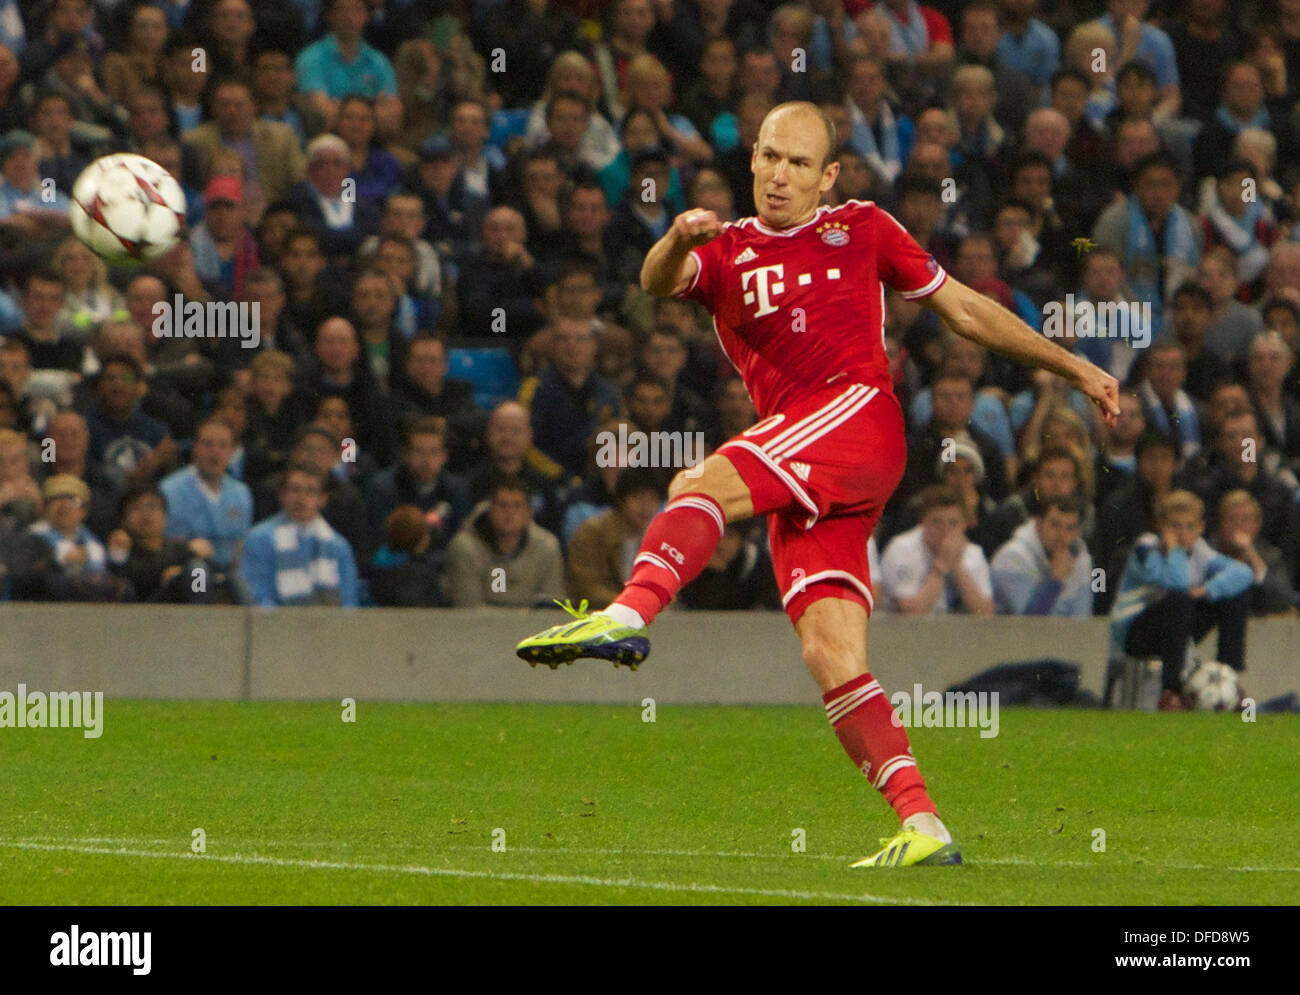 30.06.2010 Manchester, Angleterre. Du Bayern Munich Arjen Robben en action pendant le Groupe d'UEFA Champions League match entre, Manchester City et le Bayern de Munich à partir de l'Etihad Stadium. Banque D'Images